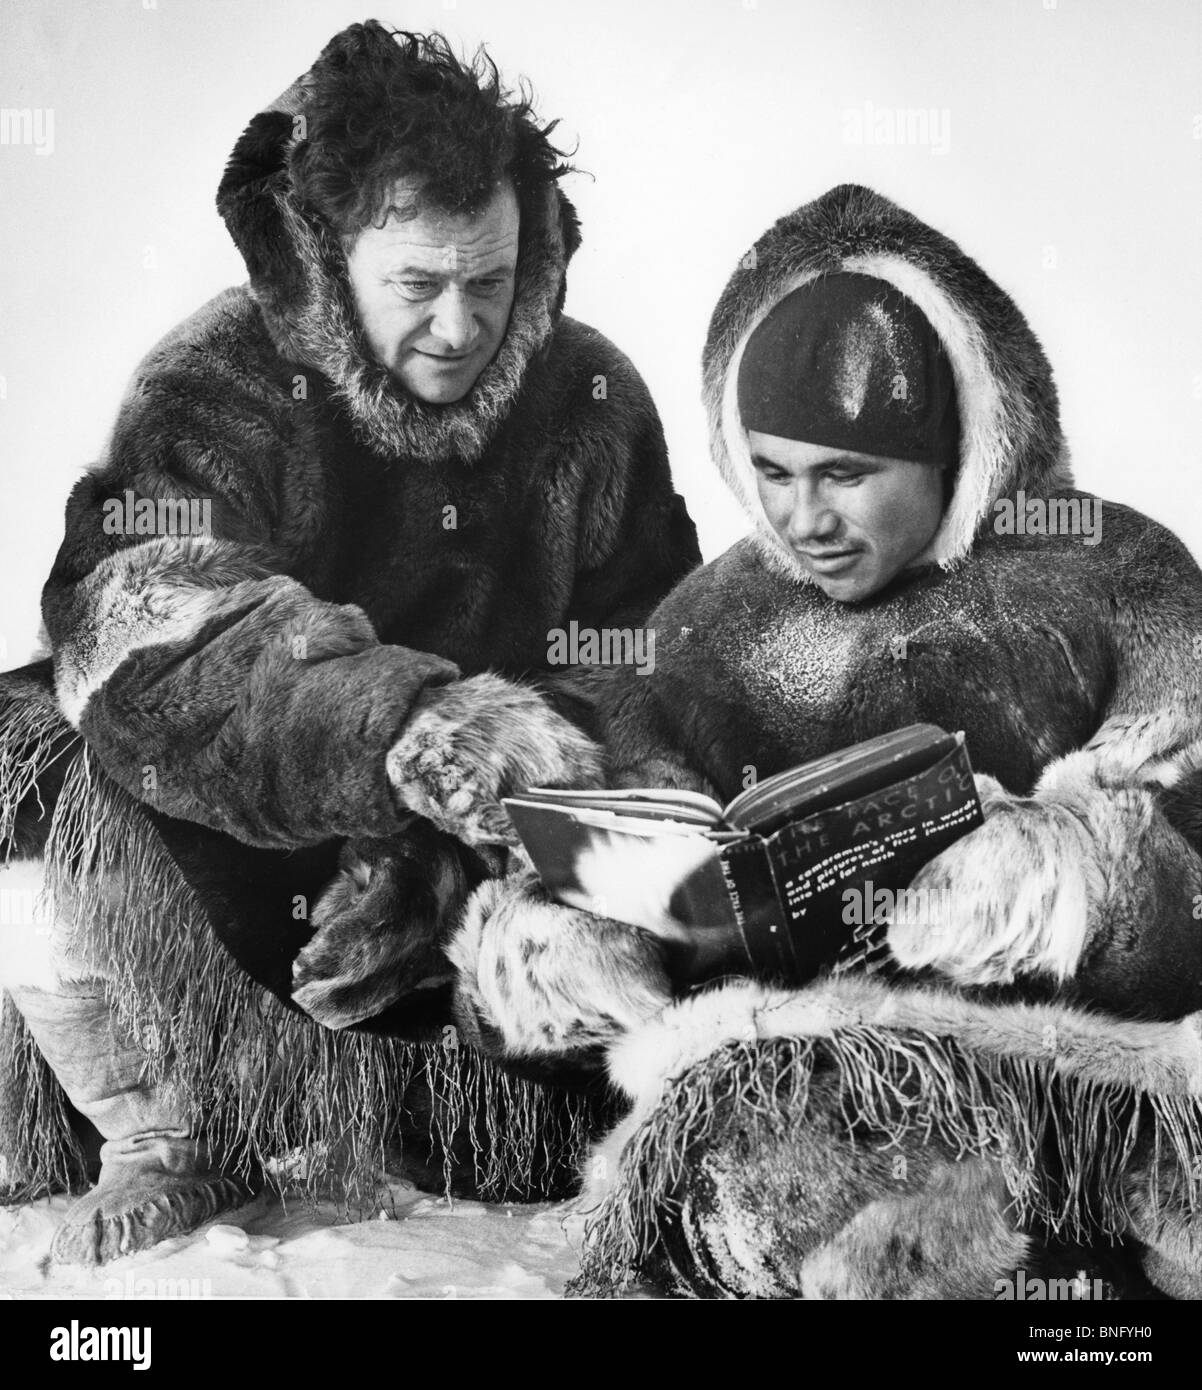 L'Arctique, deux hommes en fourrures assis et reading book Banque D'Images